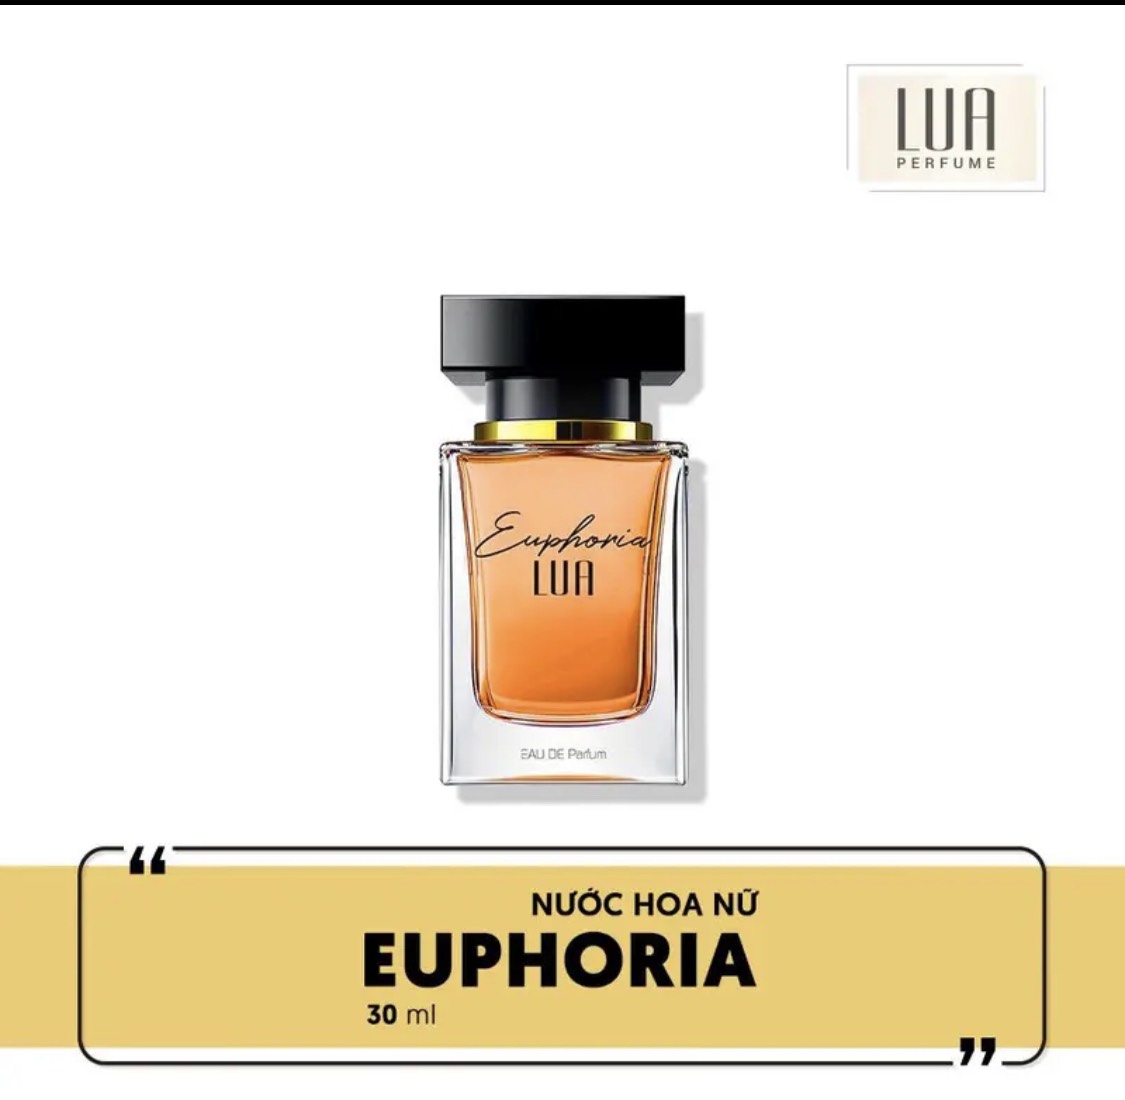 Nước hoa EUPHORIA 30ml Lua Perfume